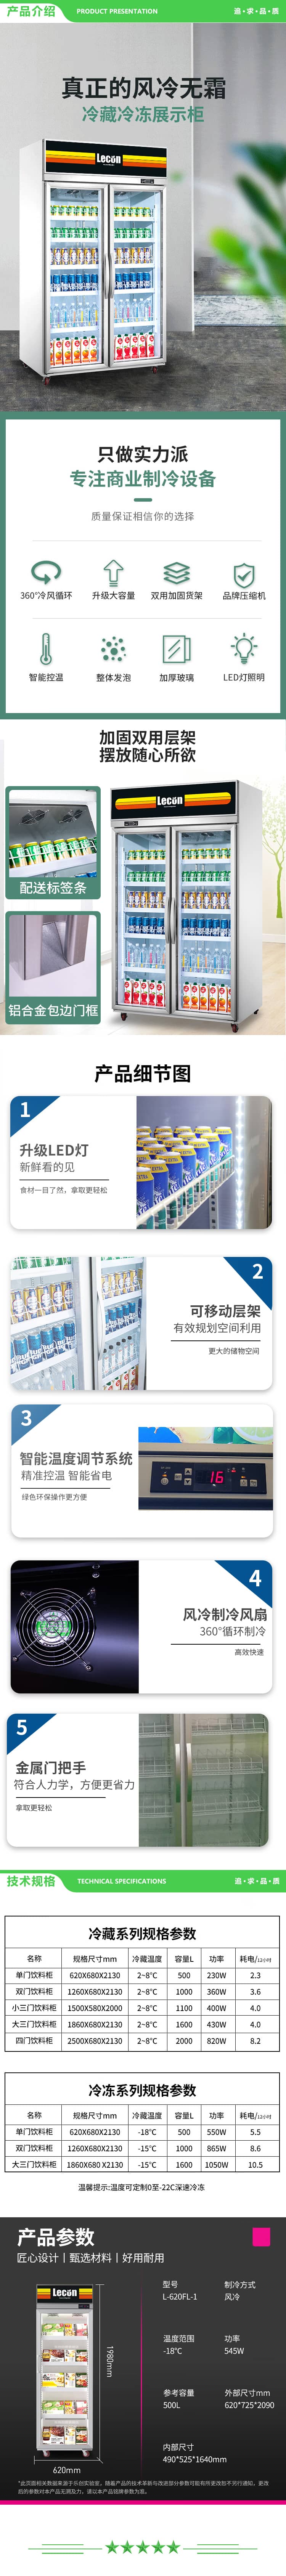 乐创 lecon L-620FL-1 超市冷冻展示柜商用立式冻品速冻饺子雪糕柜 2.jpg